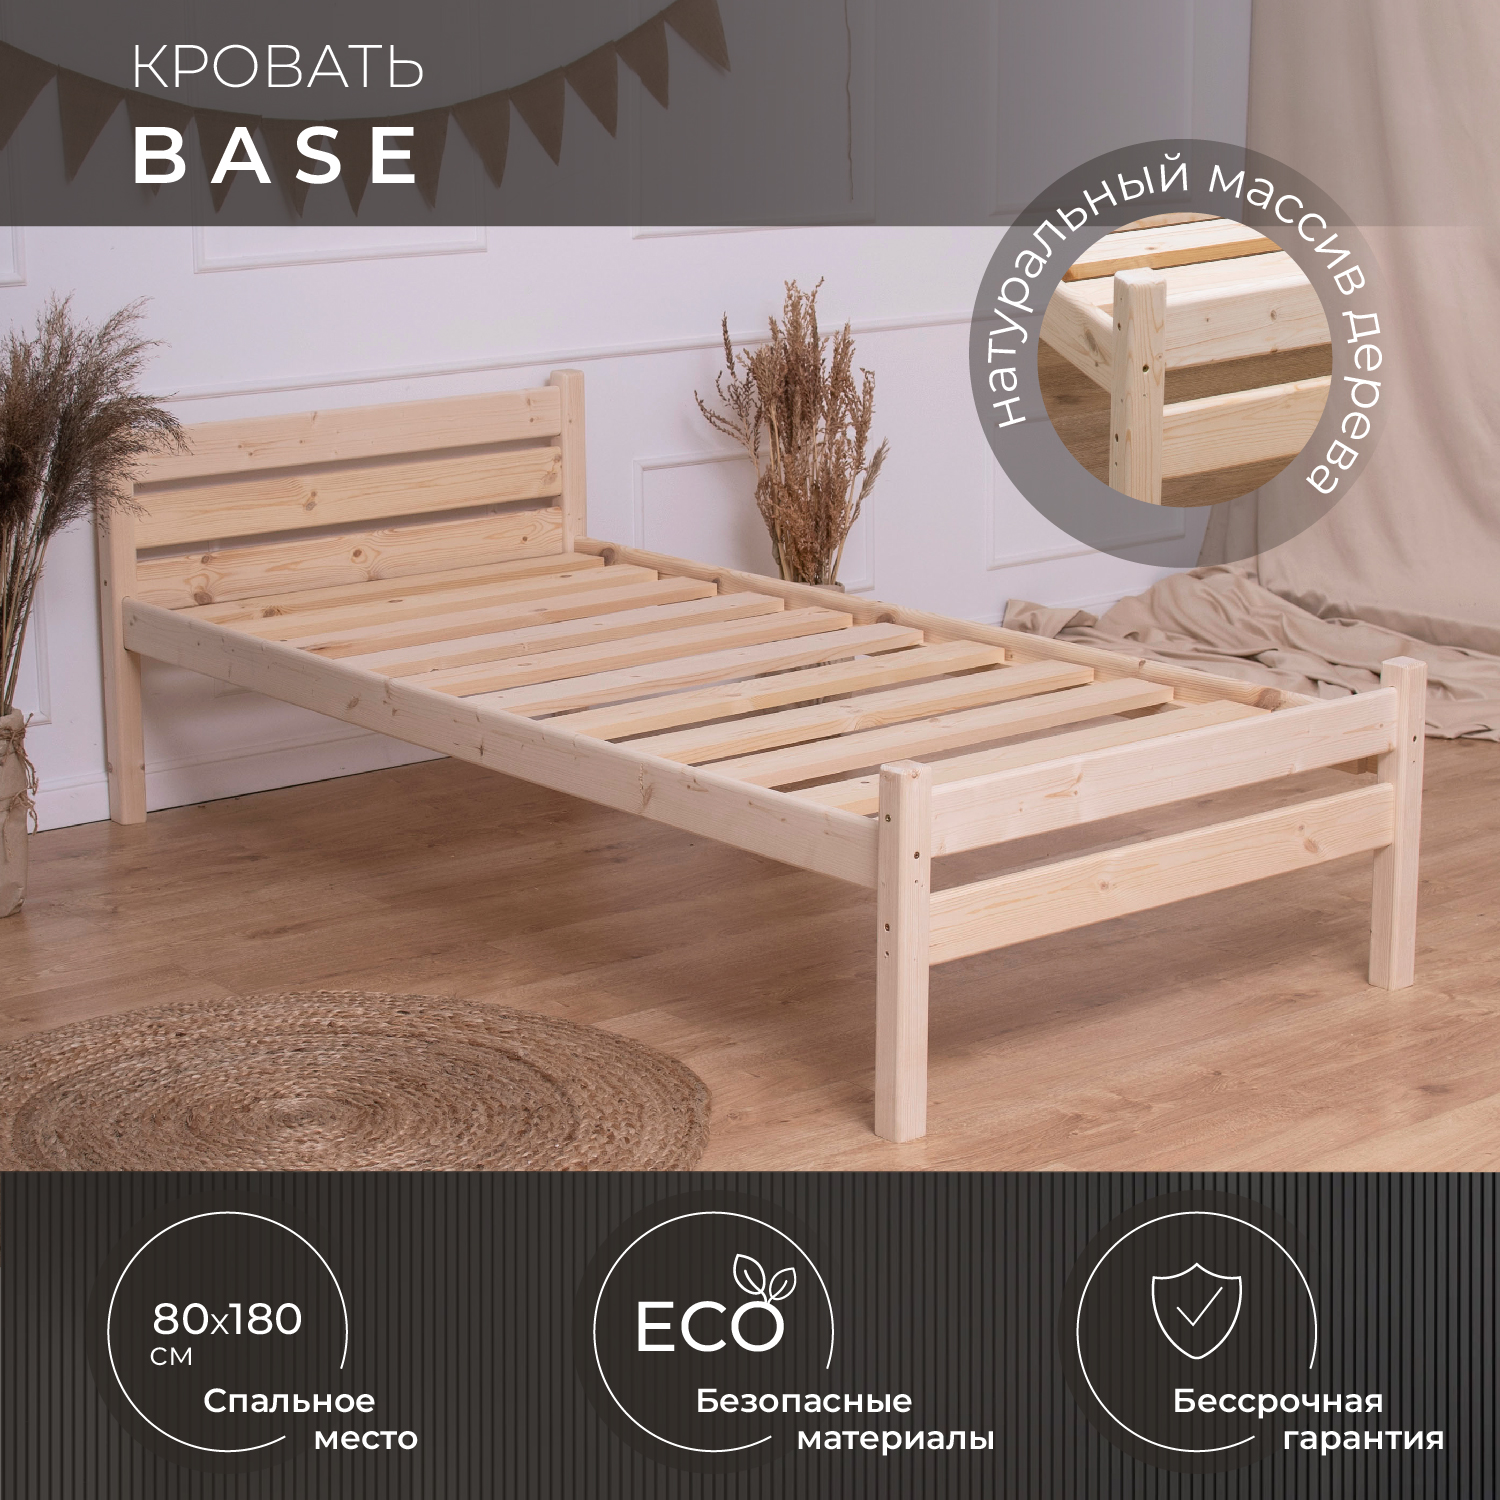 Деревянная односпальная кровать Новирон Base из массива сосны 80х180 см